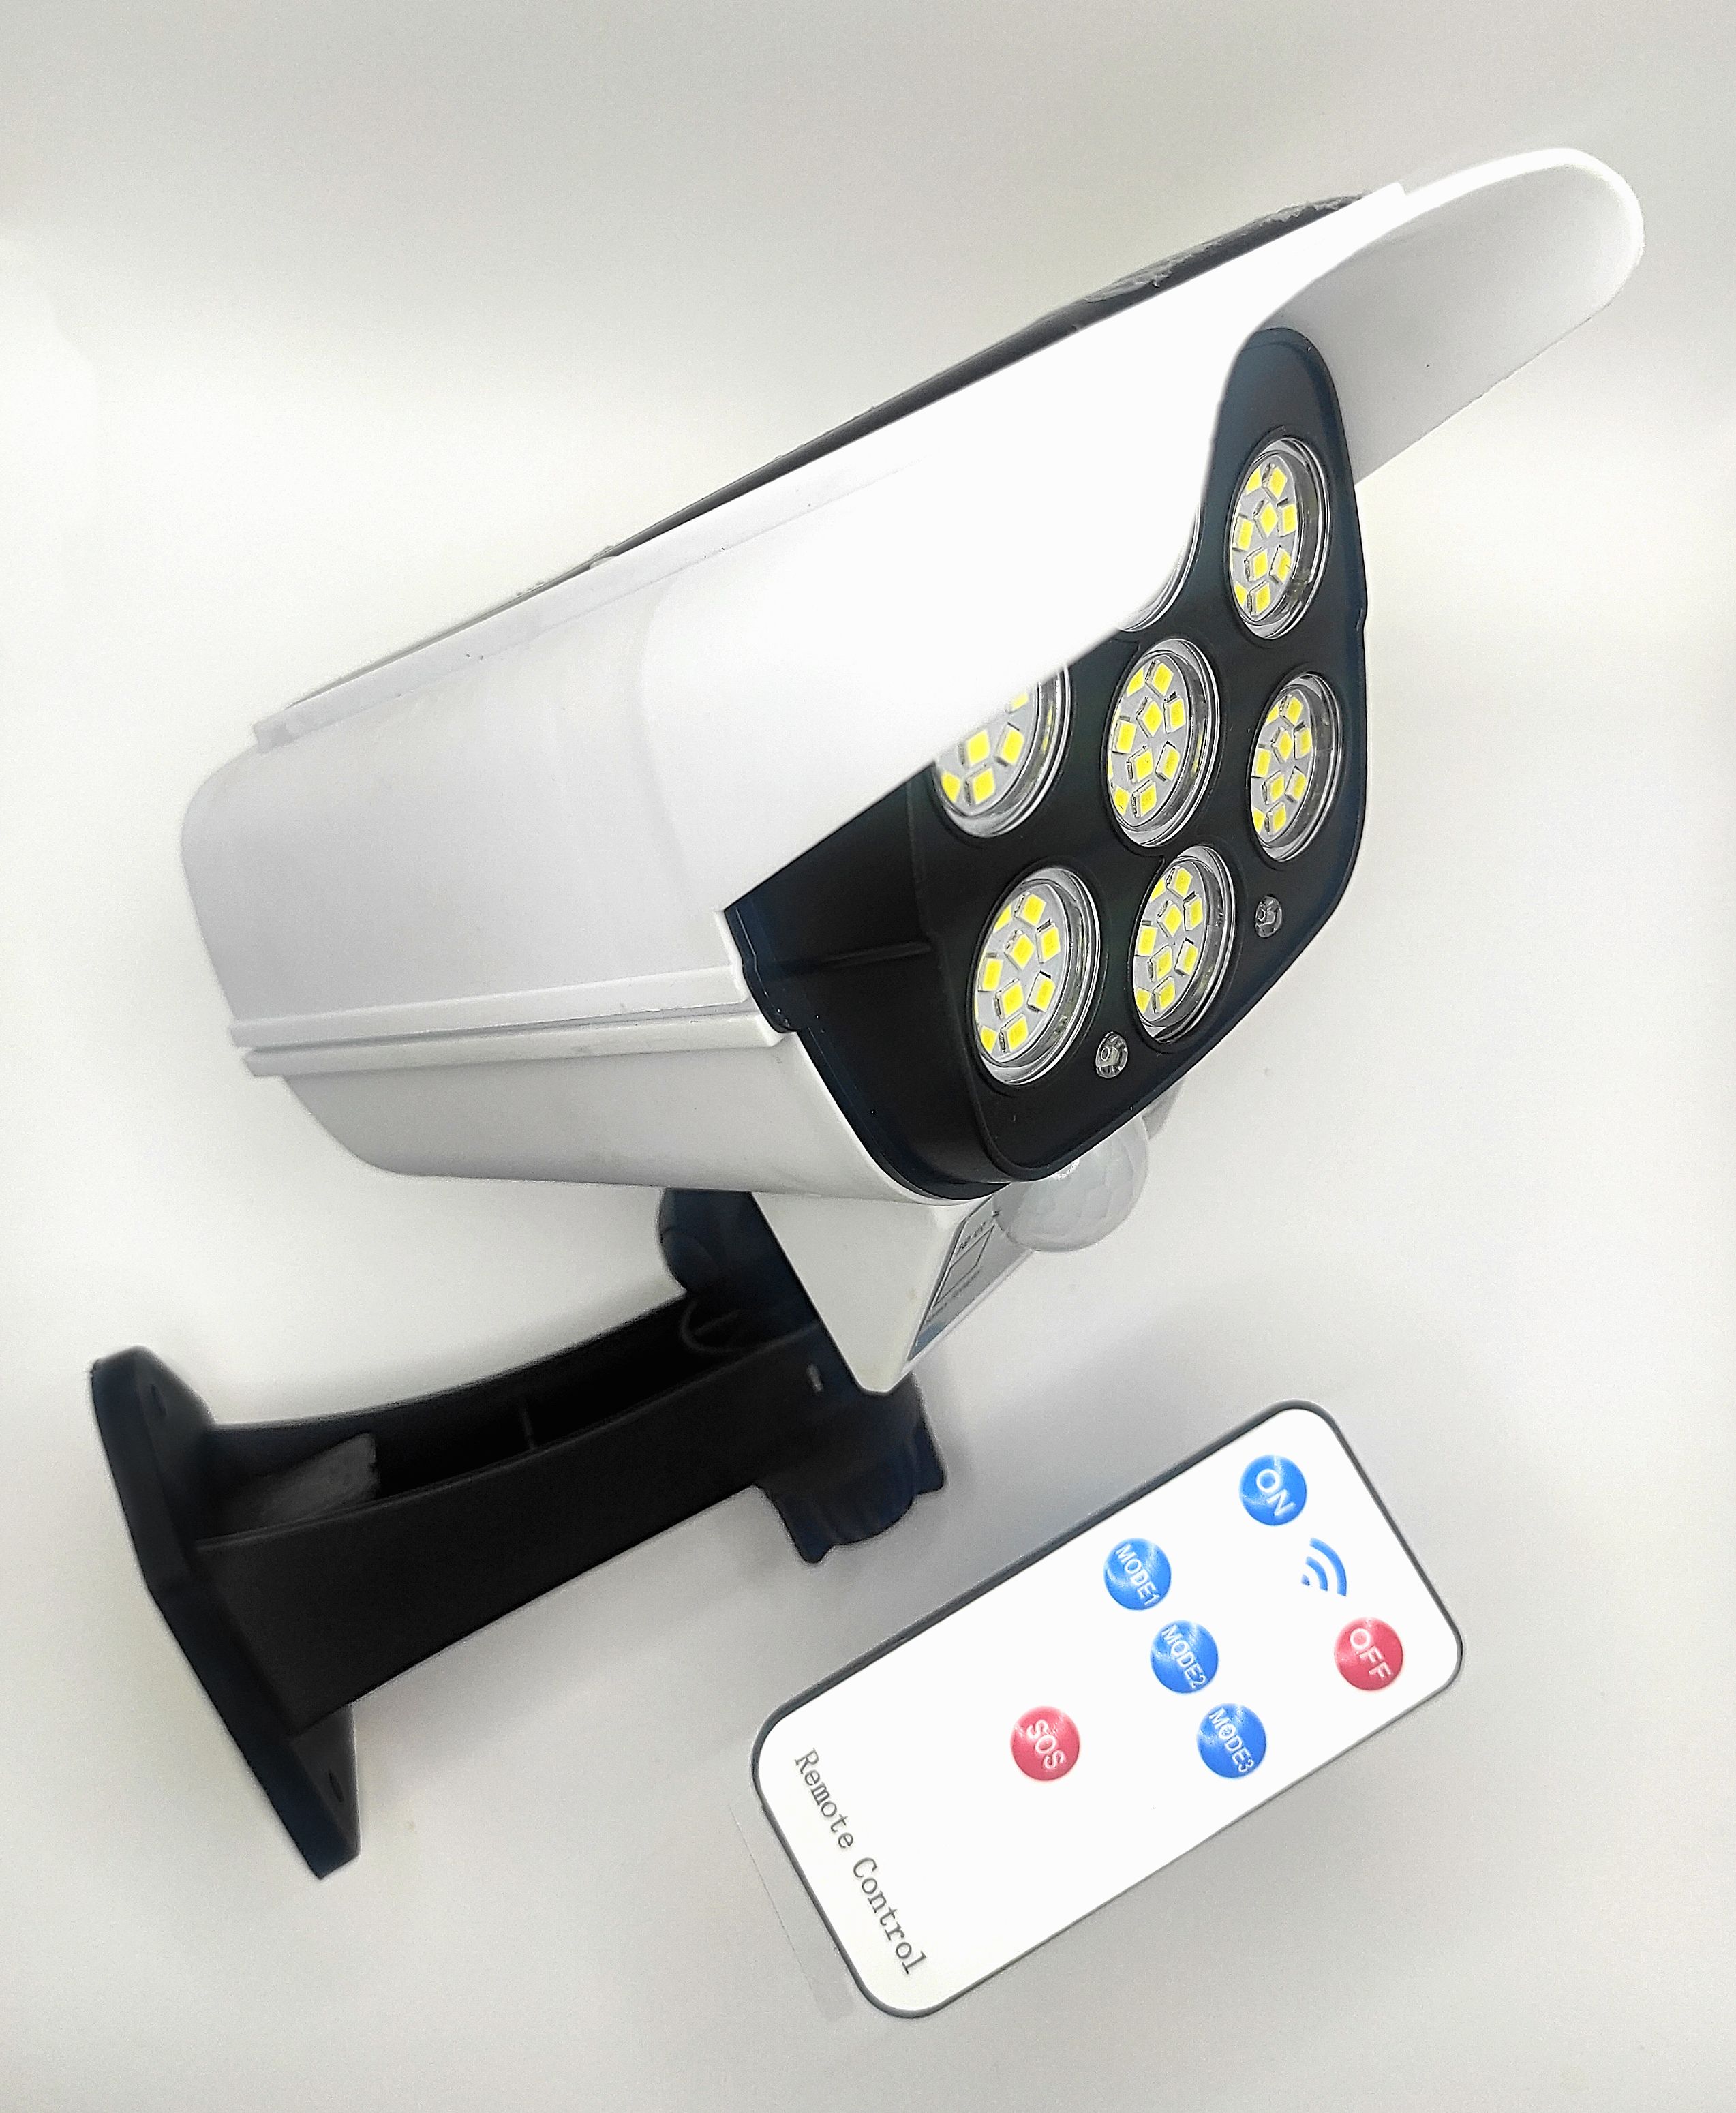 Купить светильник yg-1590 беспроводной на солнечной батарее с датчиком движения (имитация видеокамеры, 3 режима, пульт д/у, 77 cob led) | КилоВатт